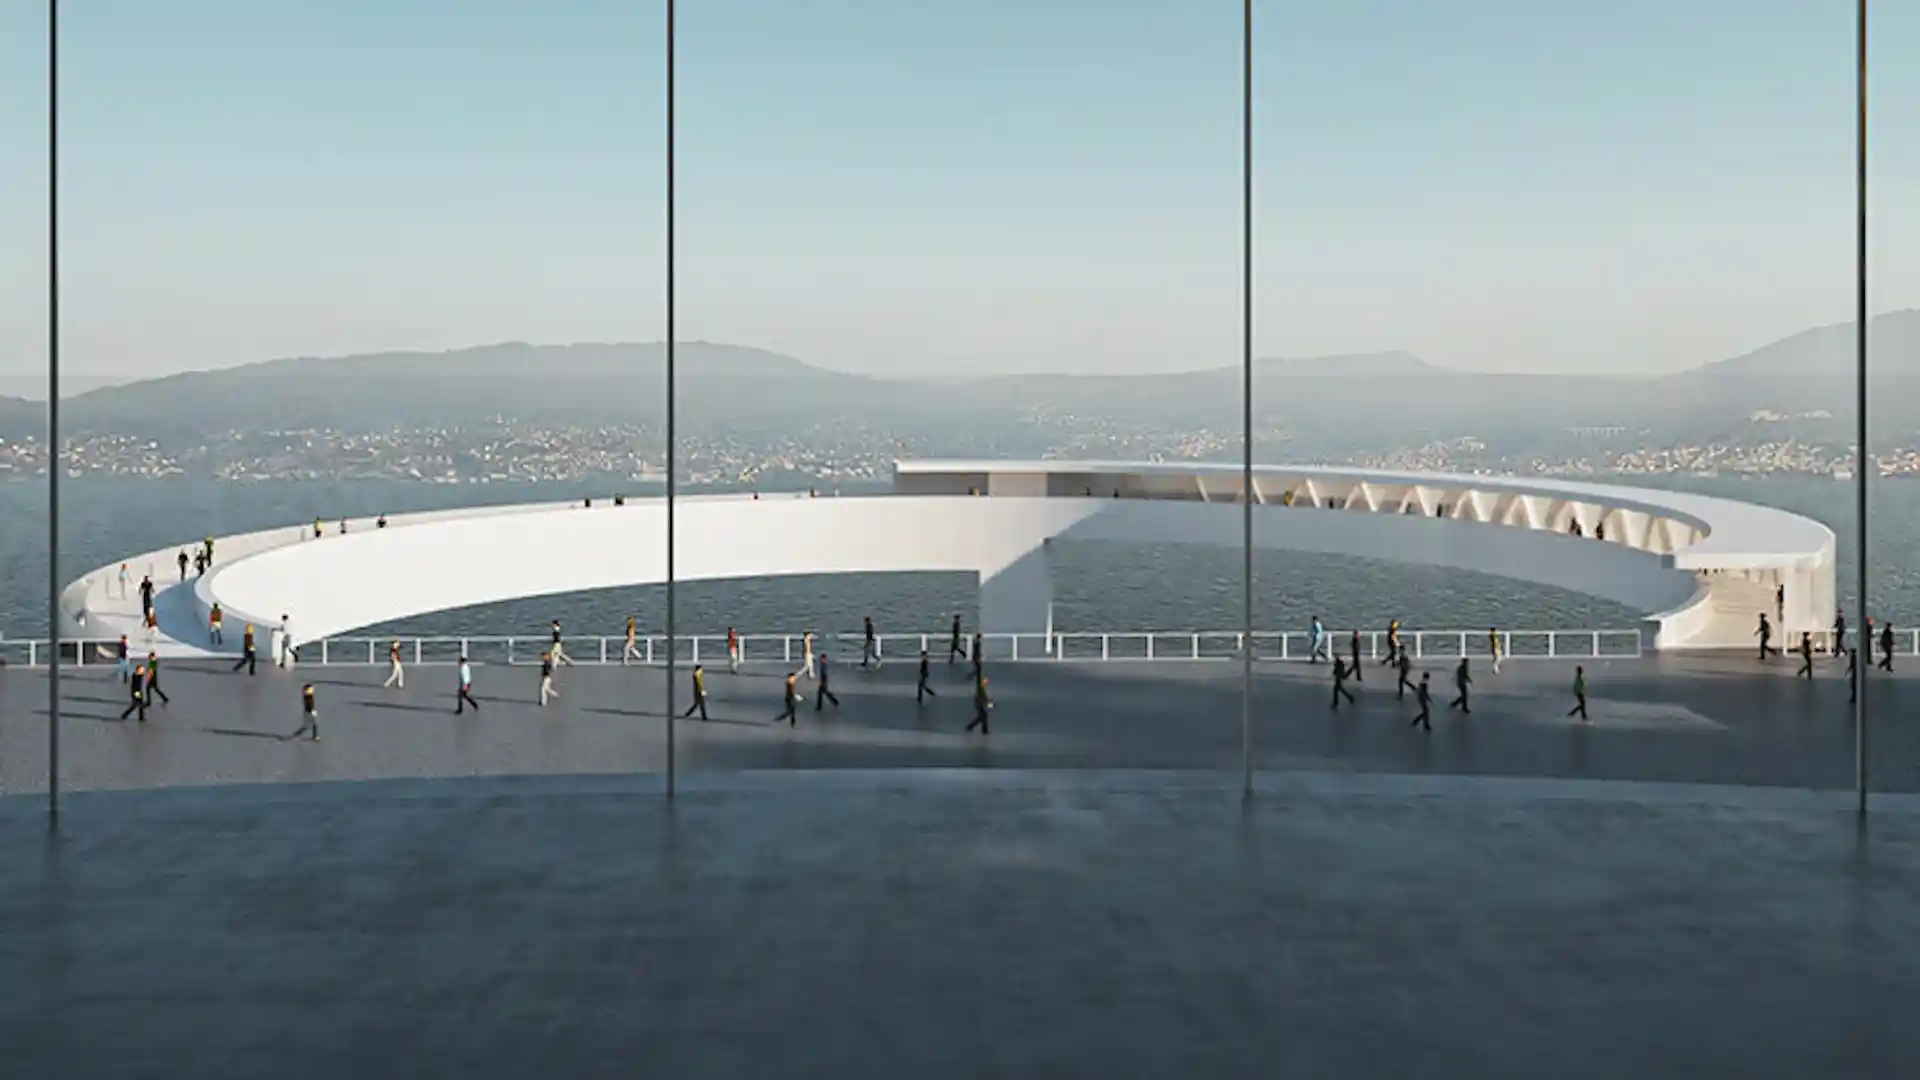 Halo: el original puente peatonal en forma de anillo en España